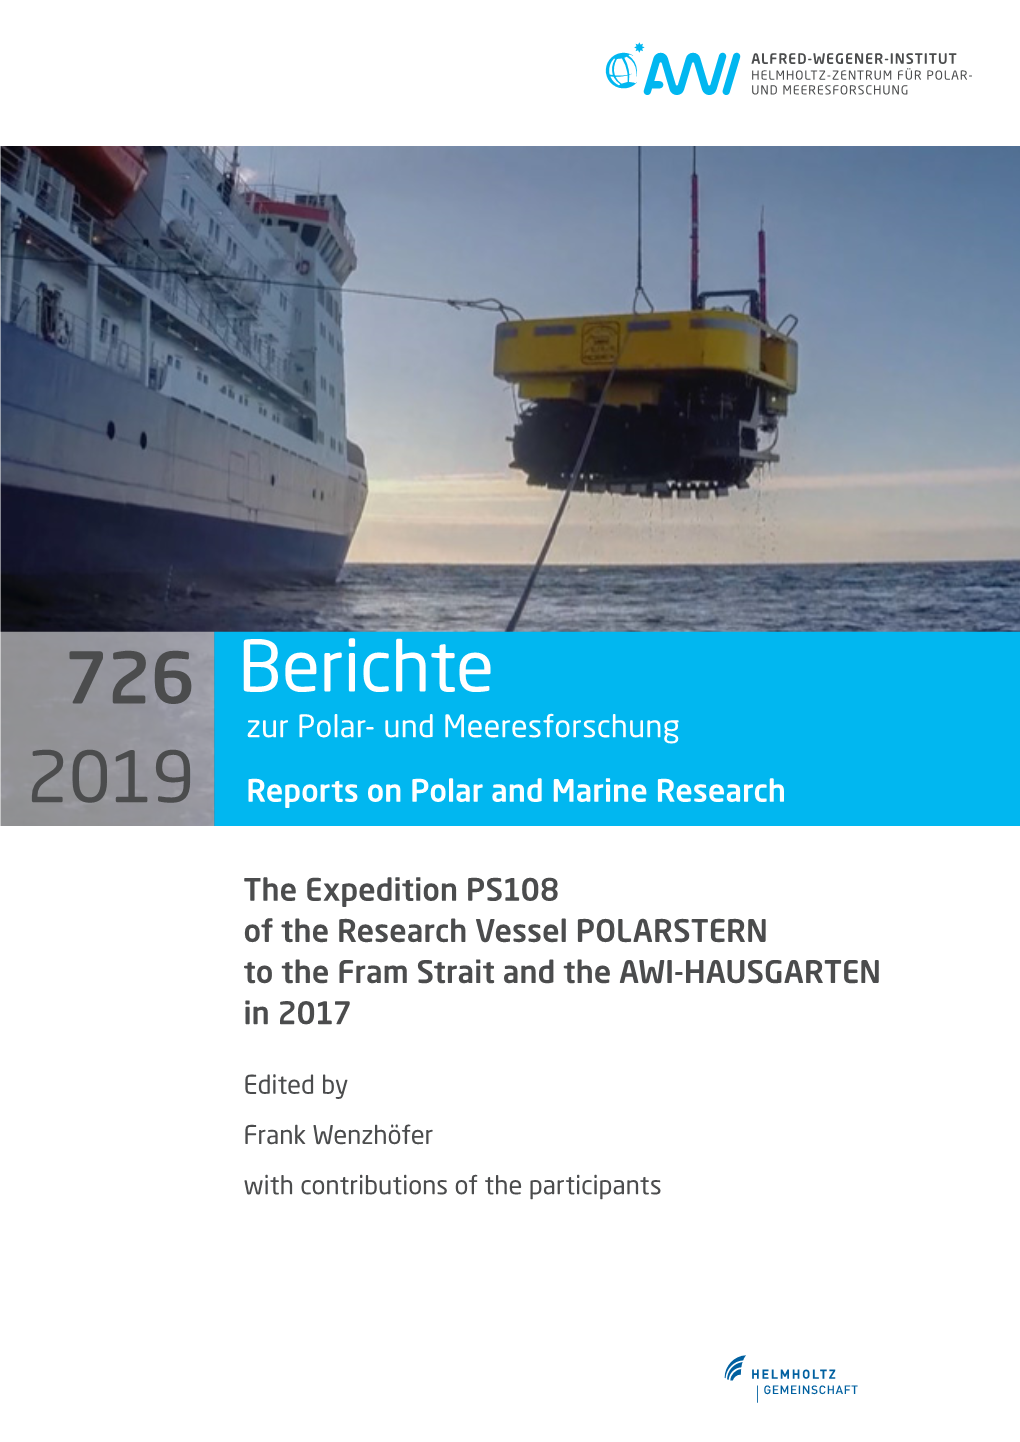 Berichte Zur Polar- Und Meeresforschung 2019 Reports on Polar and Marine Research